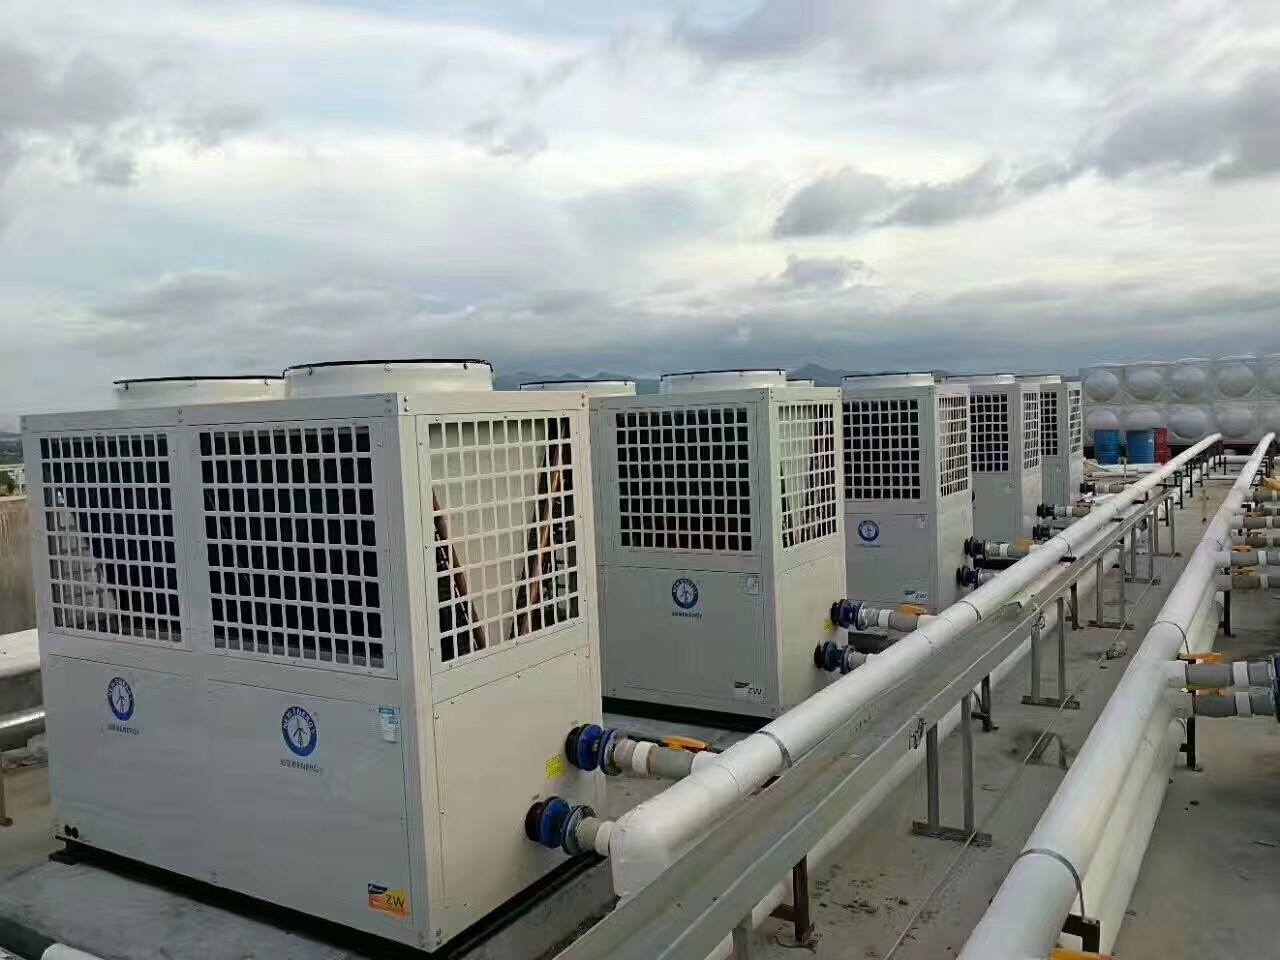 纽恩泰空气能热泵进军新疆 ， 数以万计的家庭弃媒改电